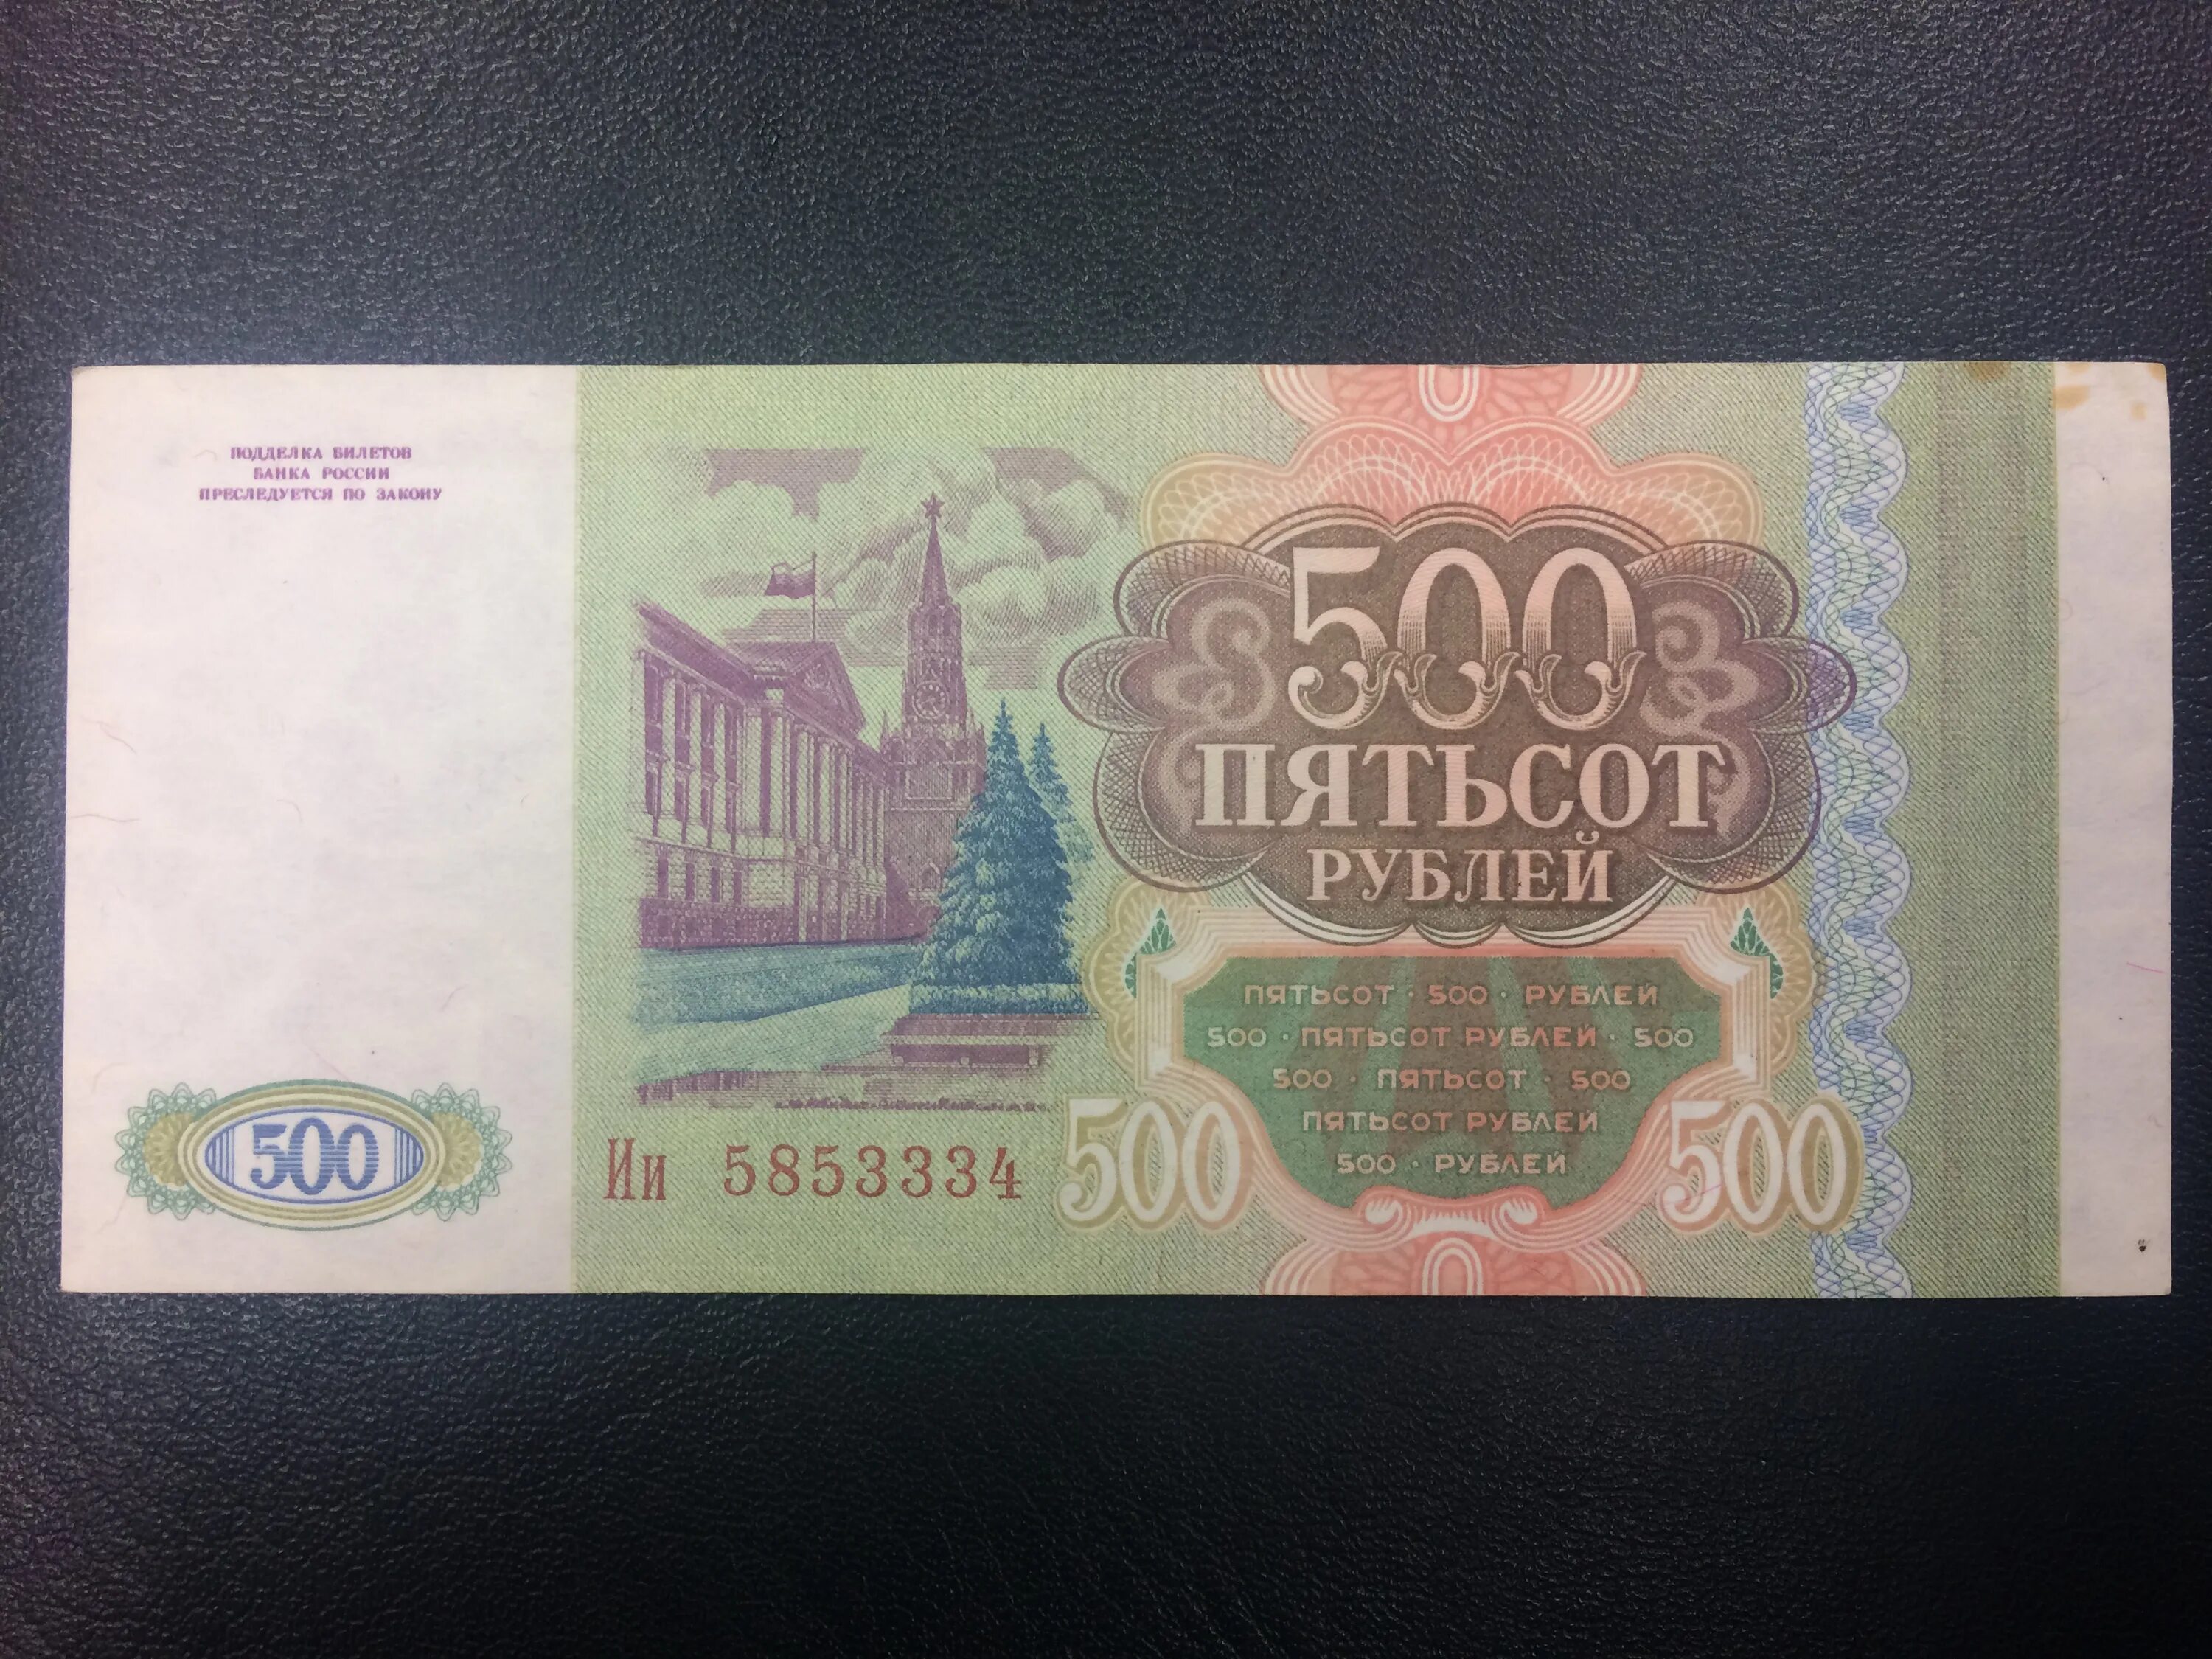 500 рублей 900. 500 Рублей 1993. Купюра 500 рублей 1993 года. Пятьсот рублей 1993 года. Купюра 500 рублей 1993.